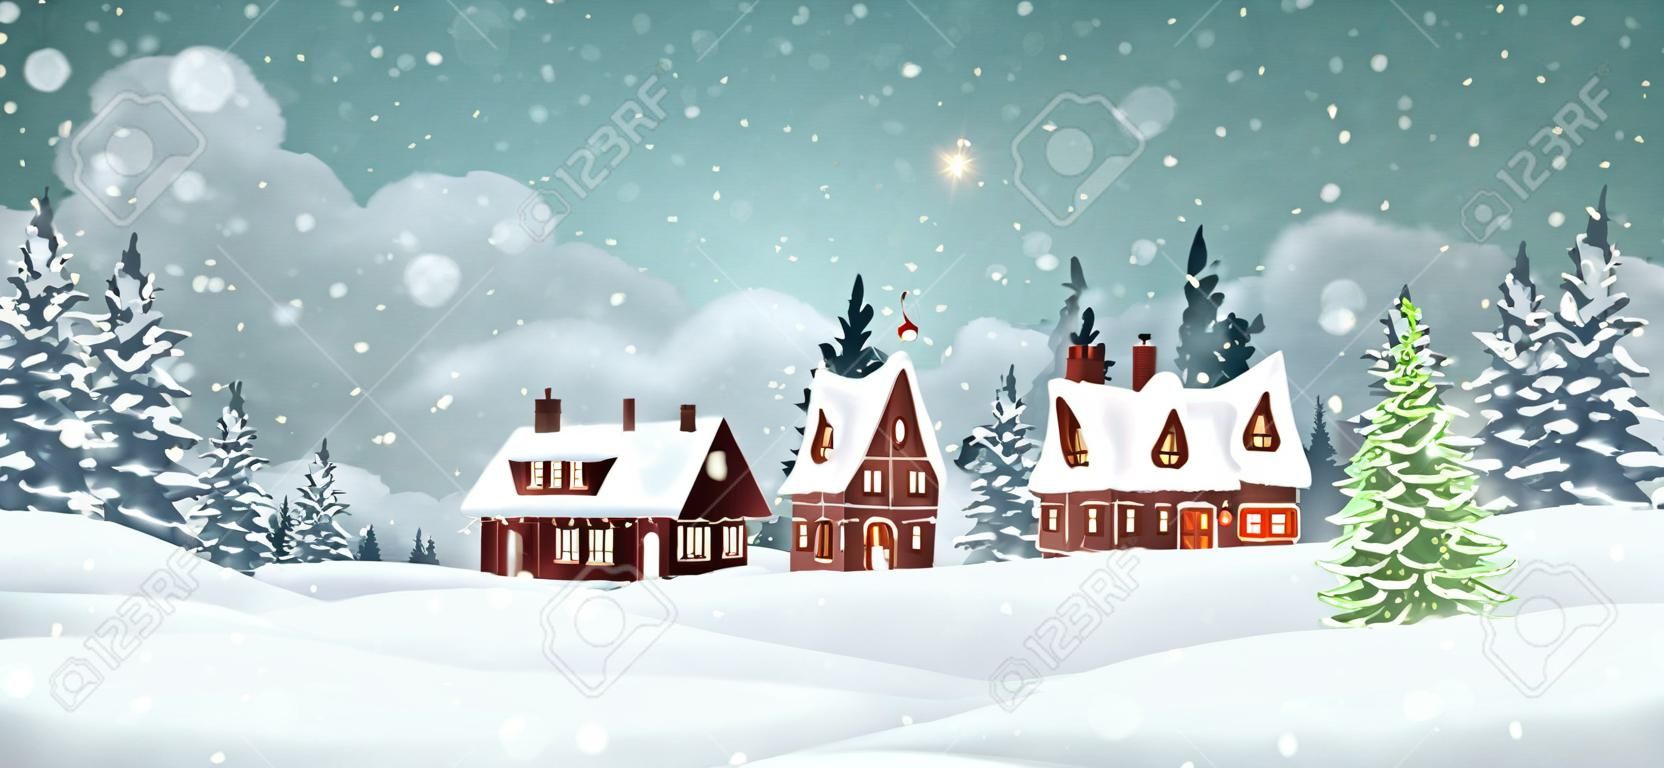 Case del villaggio di Natale con pineta invernale. Illustrazione vettoriale di vacanze di Natale